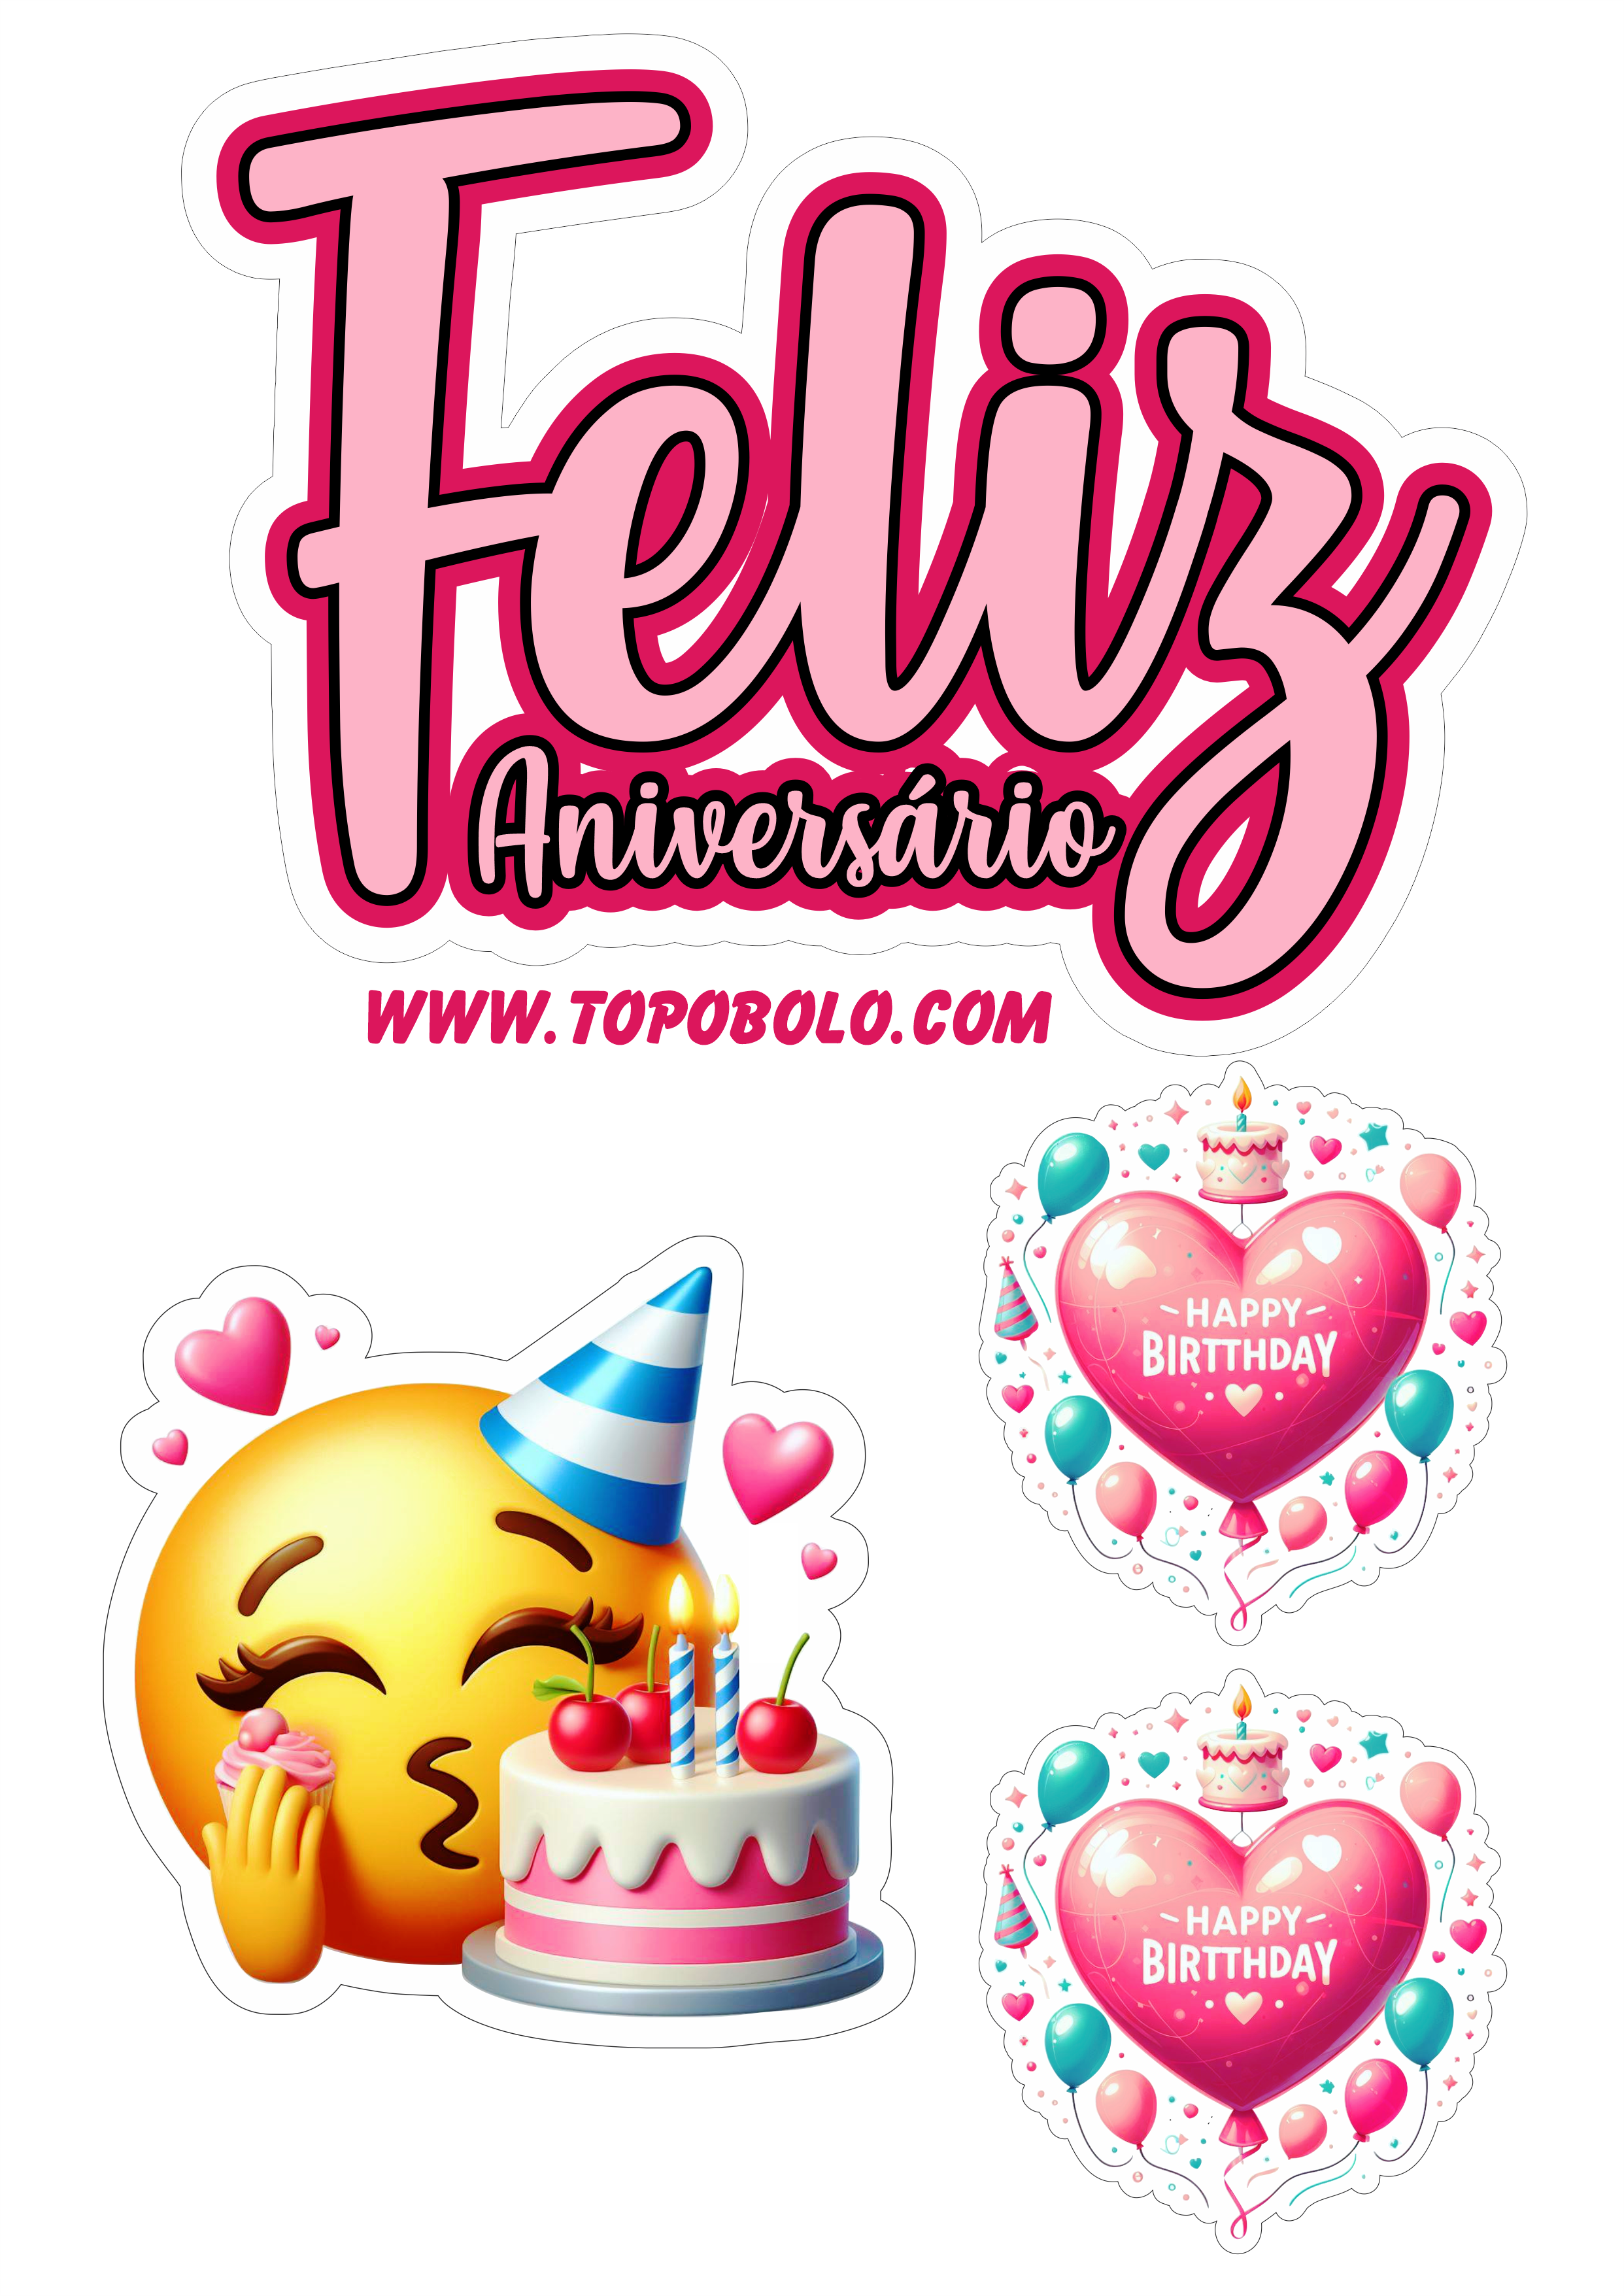 Topo de bolo feliz aniversário emojis engraçados festa pronta papelaria emoticon png